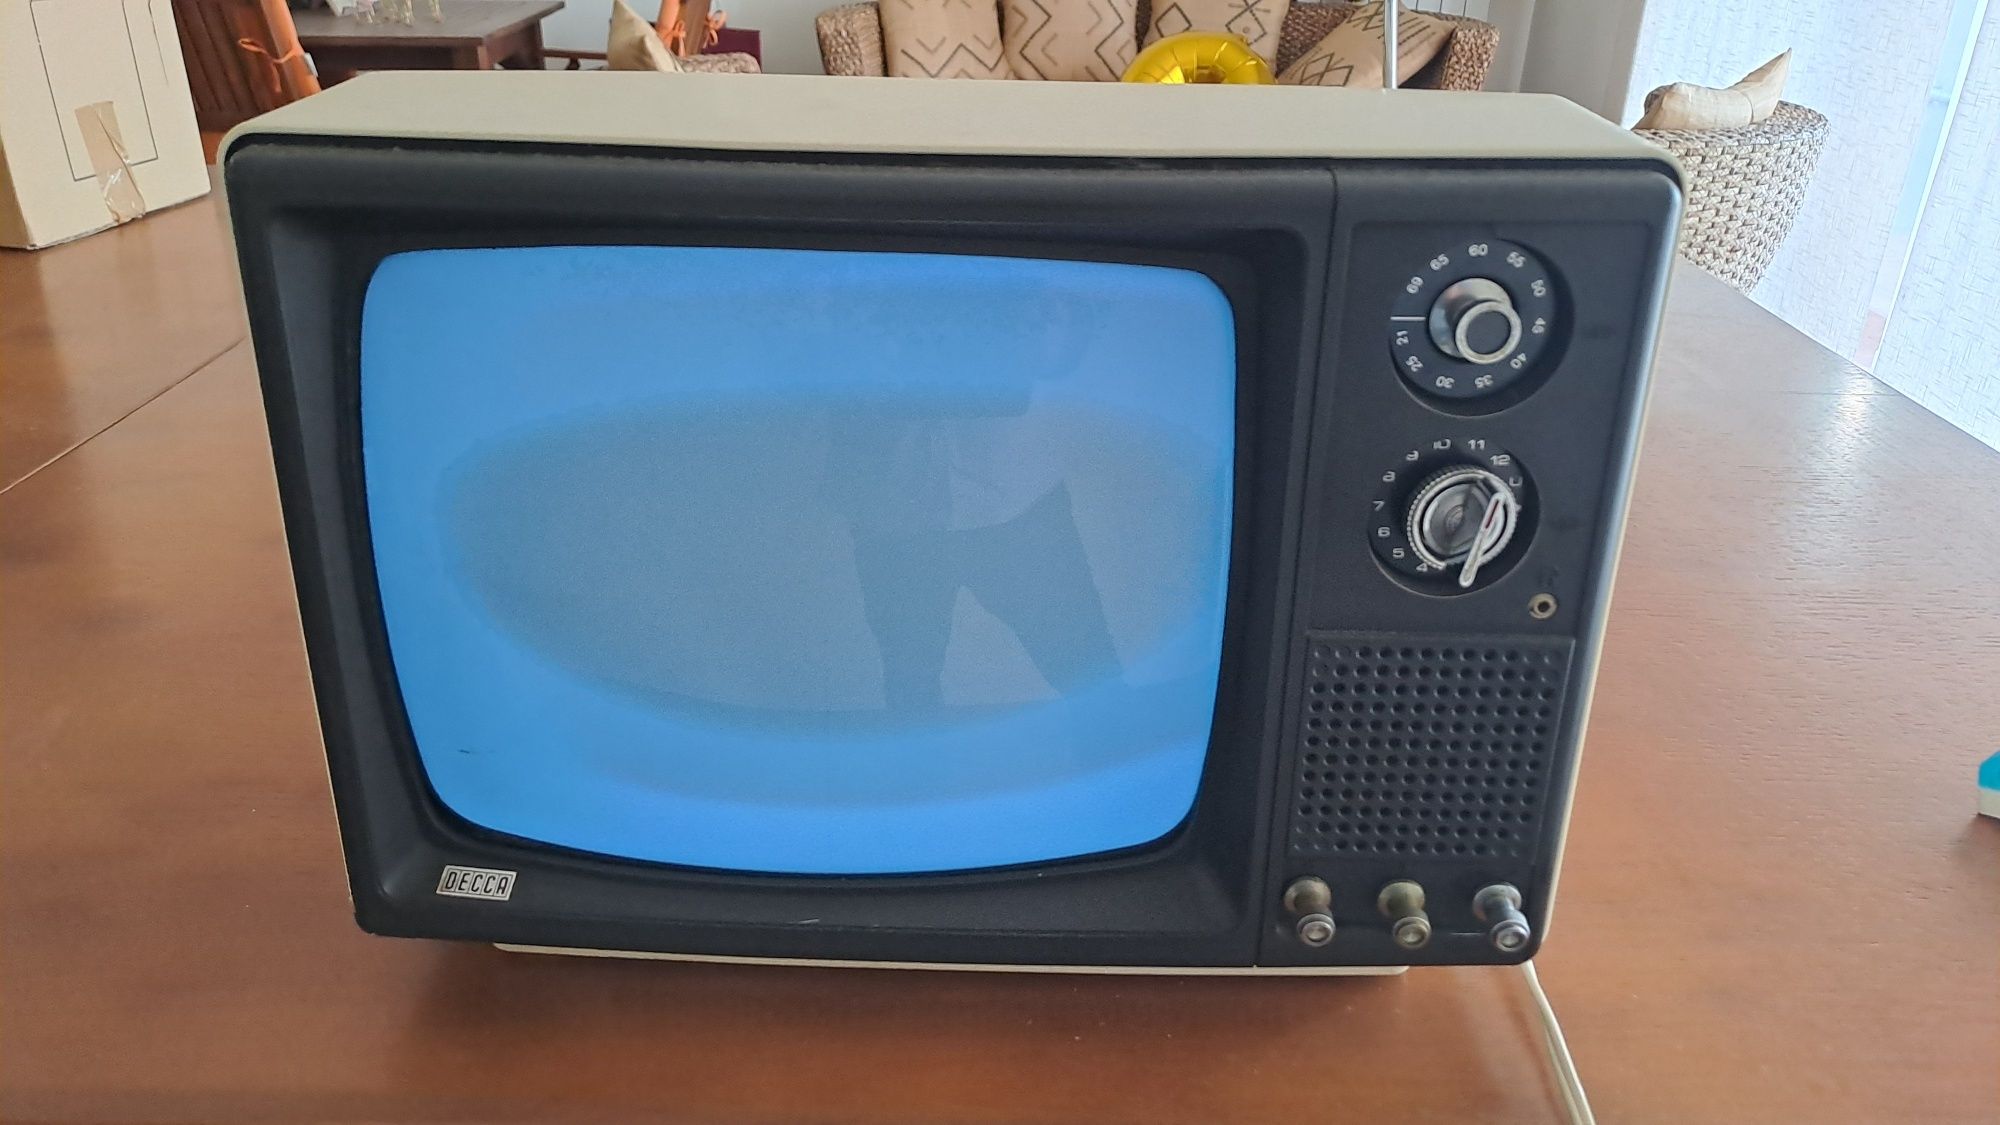 Televisão DECCA anos 80 colecionador